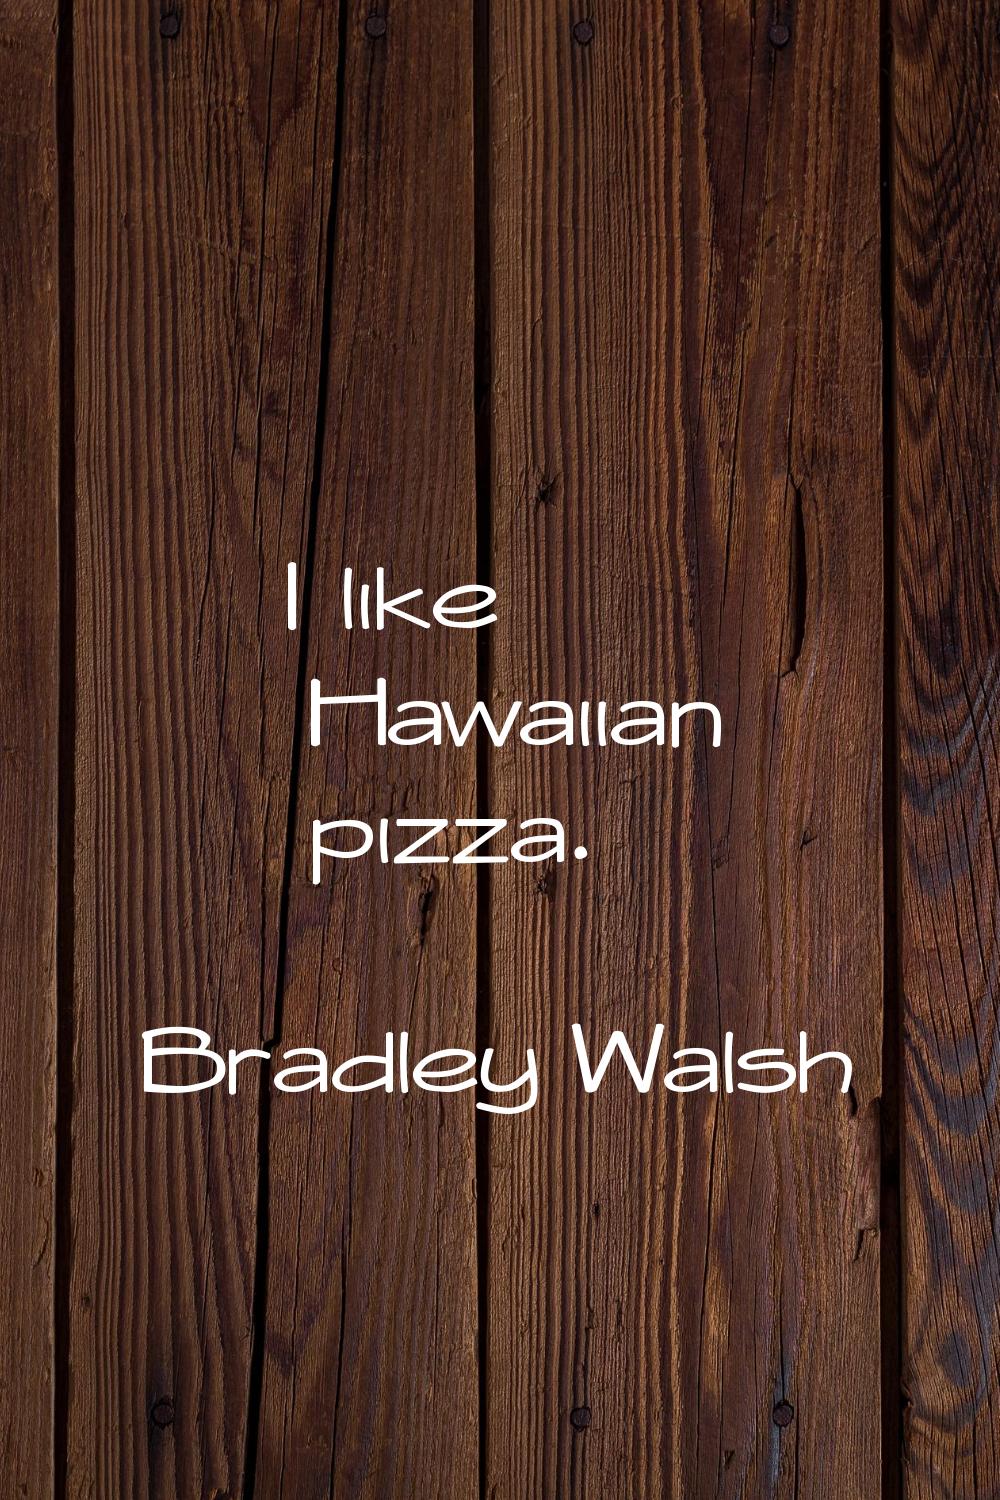 I like Hawaiian pizza.